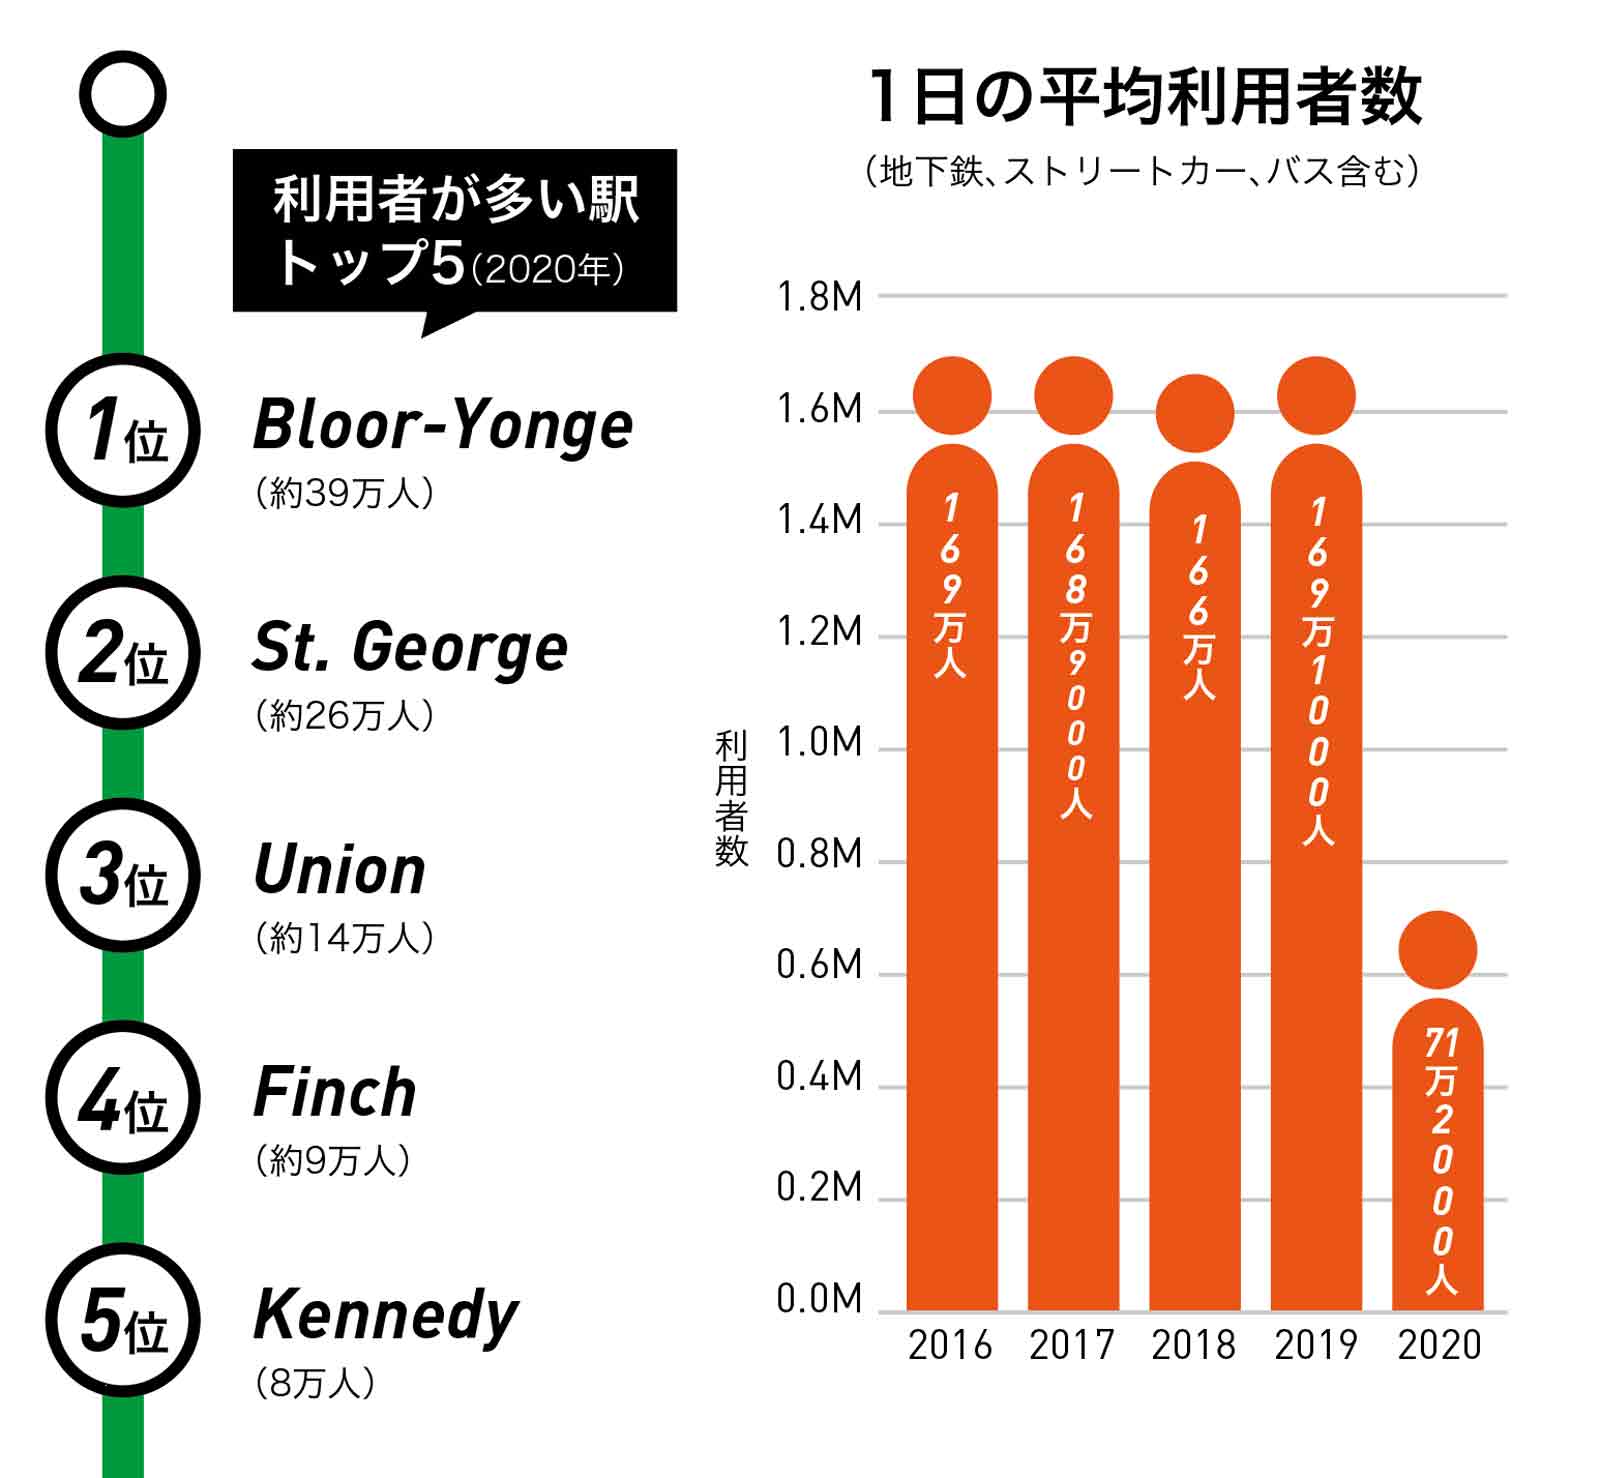 利用者が多い駅トップ5（2020年）/1日の平均利用者数（地下鉄、ストリートカー、バス含む）